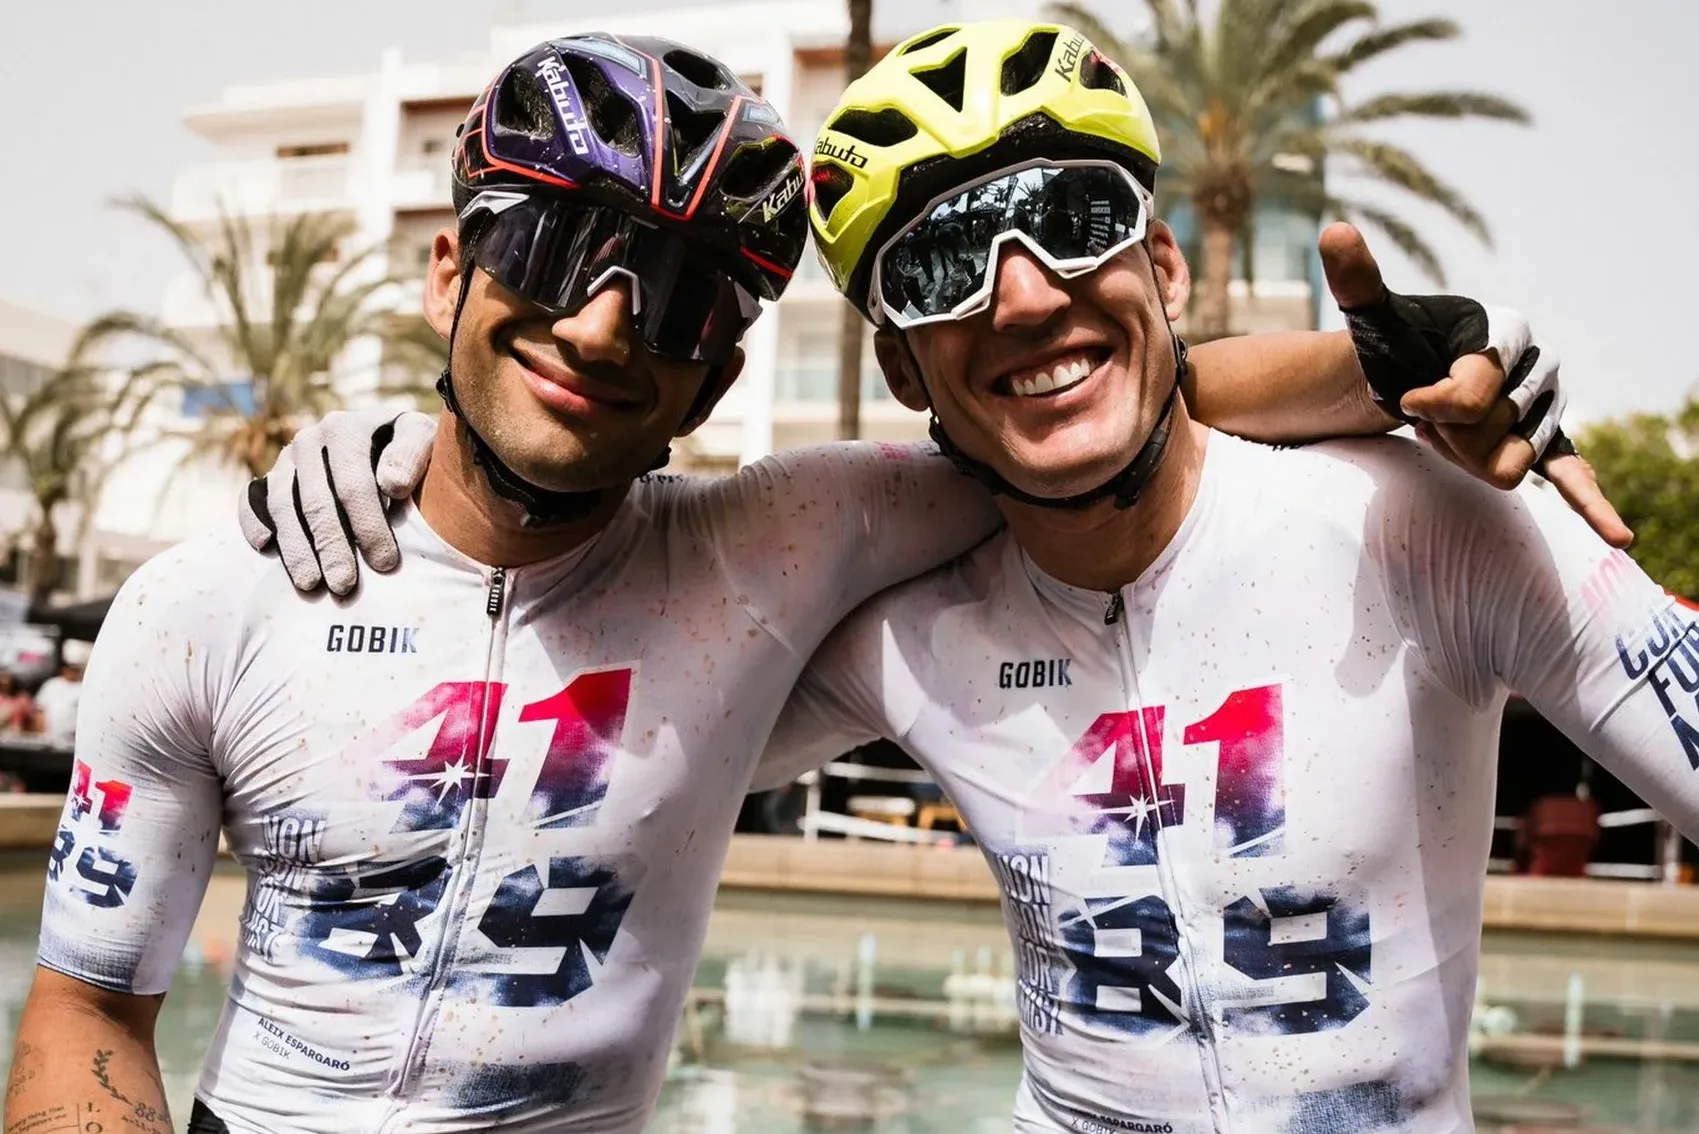 Nyertes párosként végződött Martín és Aleix Espargaró hegyikerékpár-versenye – Megmutatjuk a győztes pillanatokat!